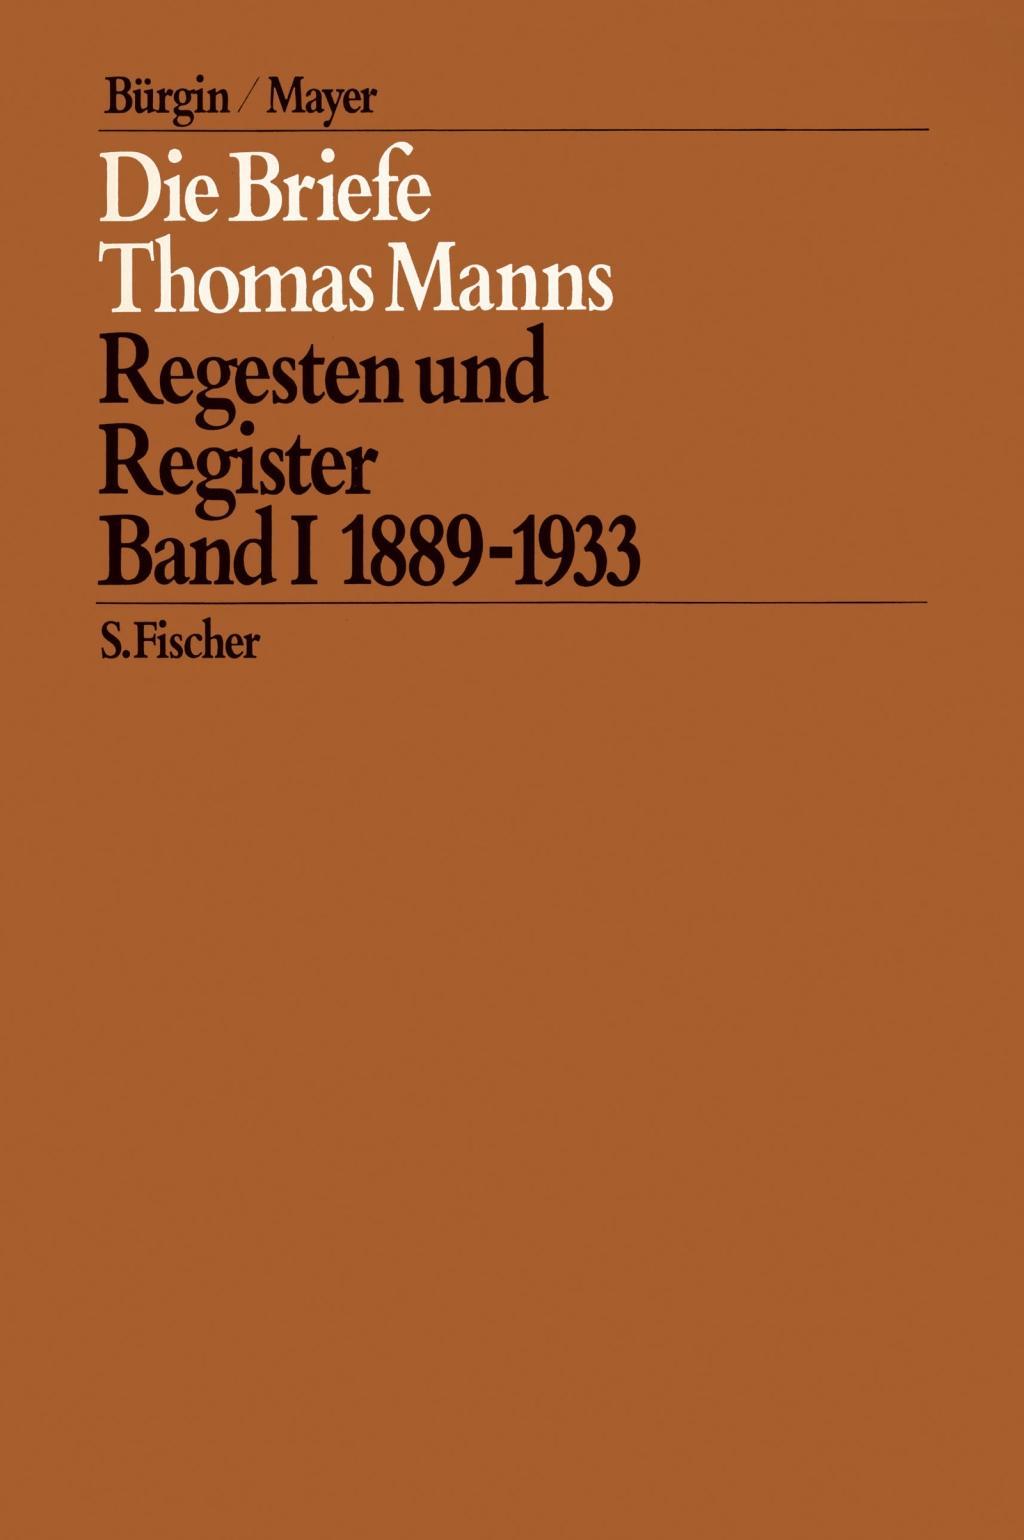 Die Briefe Thomas Manns 1. 1889 - 1933 - Thomas Mann